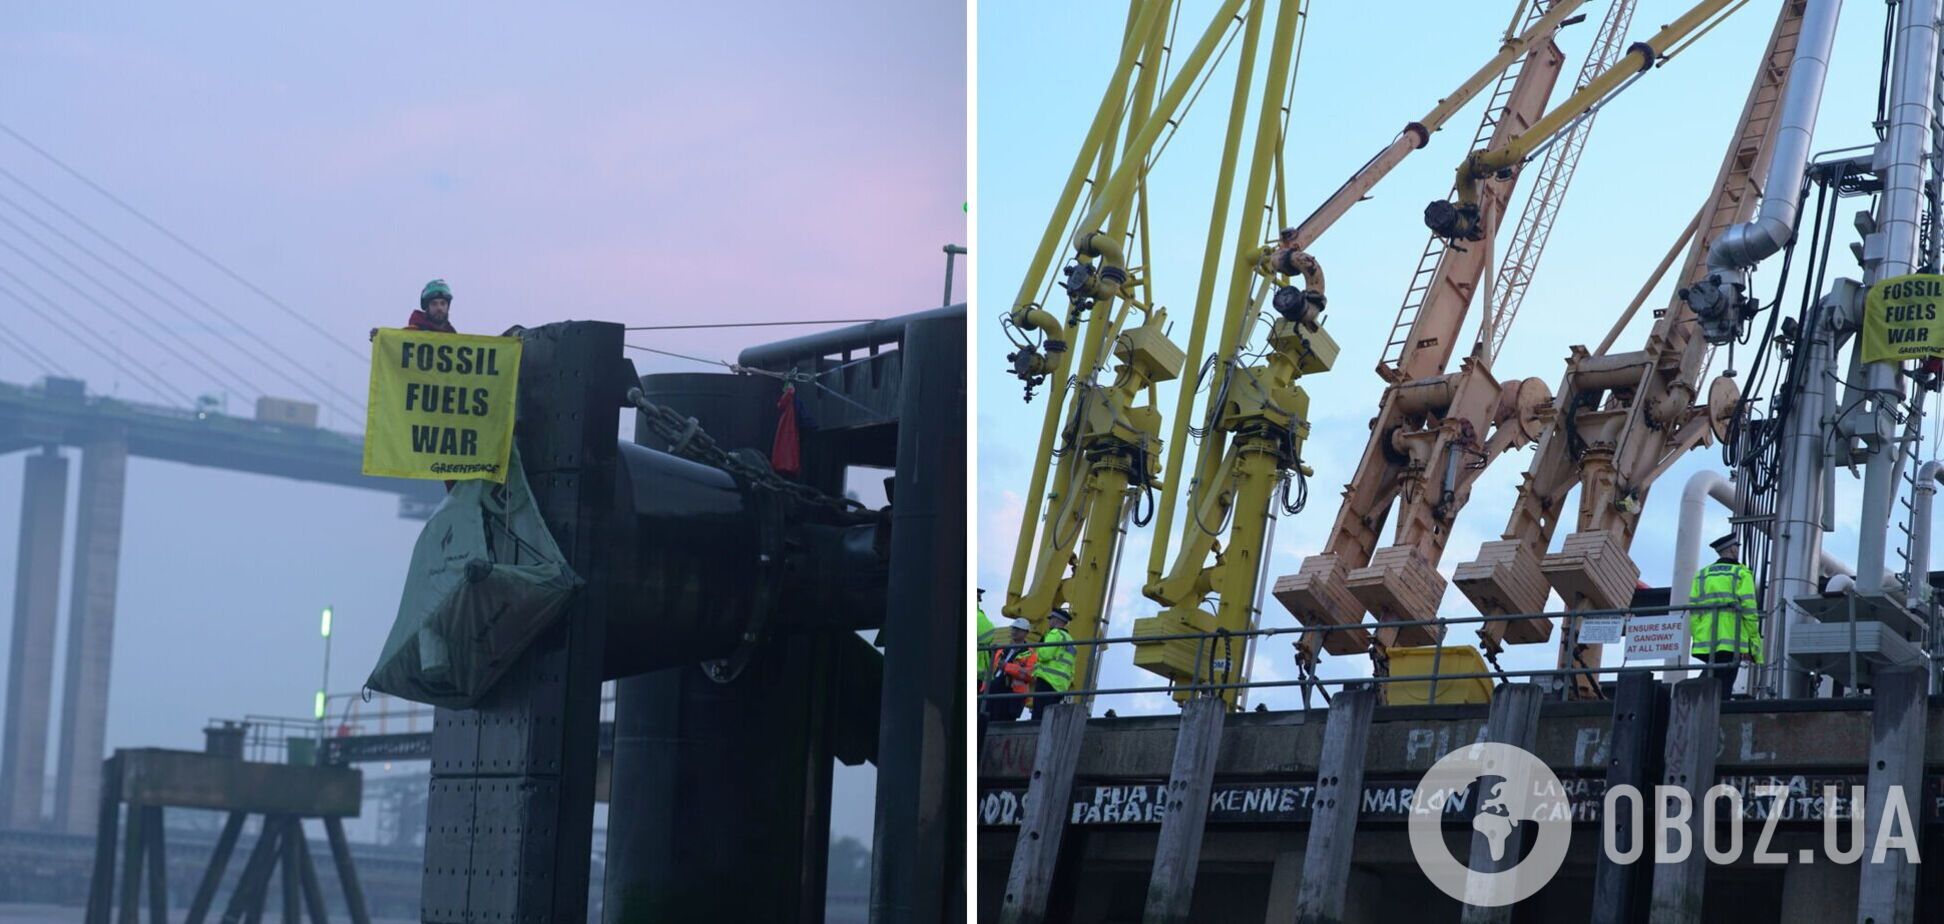 Активисты Greenpeace не пустили в британский порт греческий танкер с российским топливом – Reuters